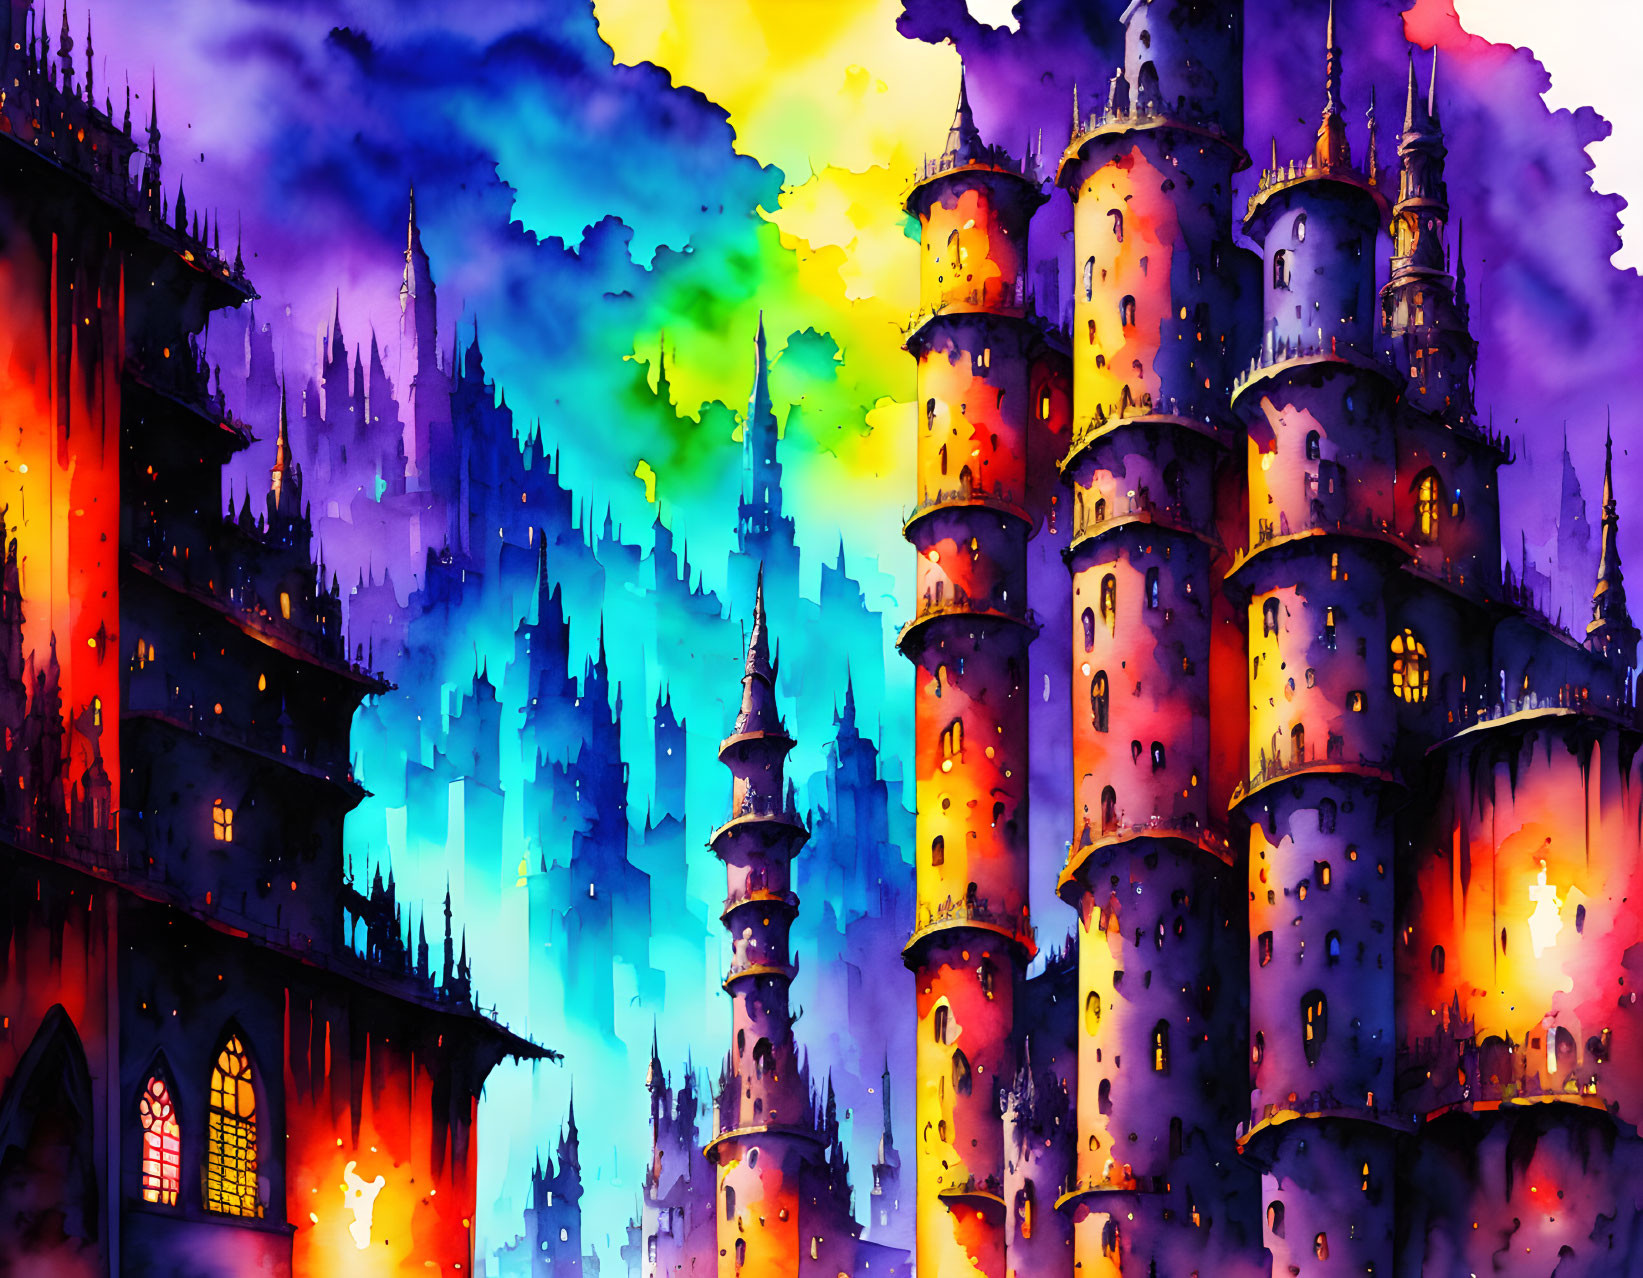 Fantastical castle illustration with colorful spires in dusk sky